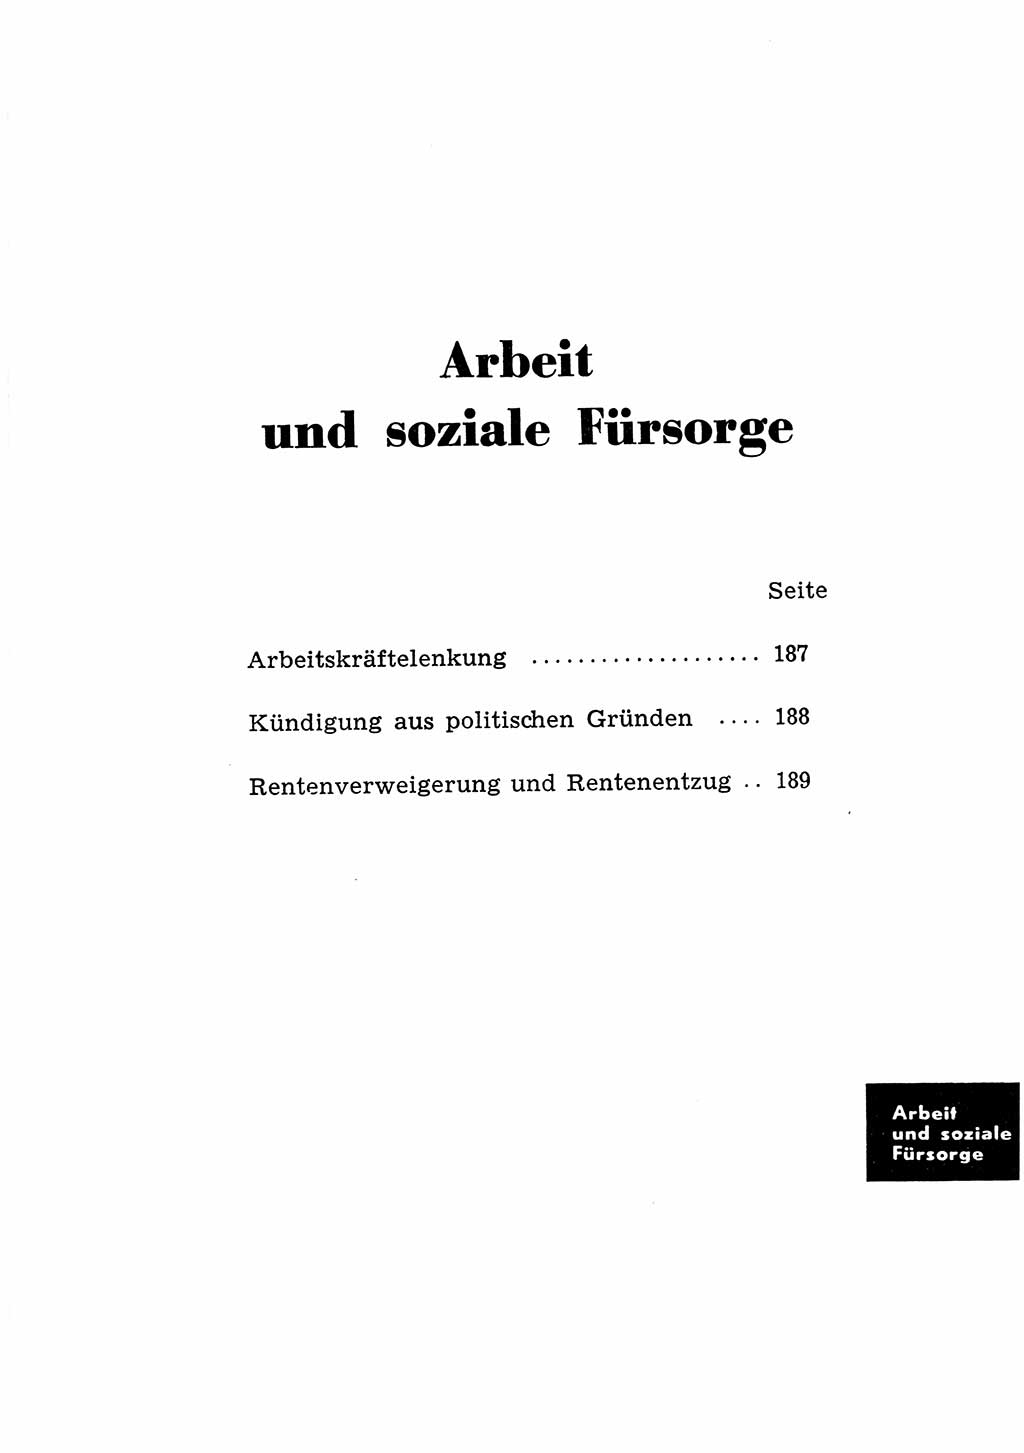 Katalog des Unrechts, Untersuchungsausschuß Freiheitlicher Juristen (UfJ) [Bundesrepublik Deutschland (BRD)] 1956, Seite 185 (Kat. UnR. UfJ BRD 1956, S. 185)